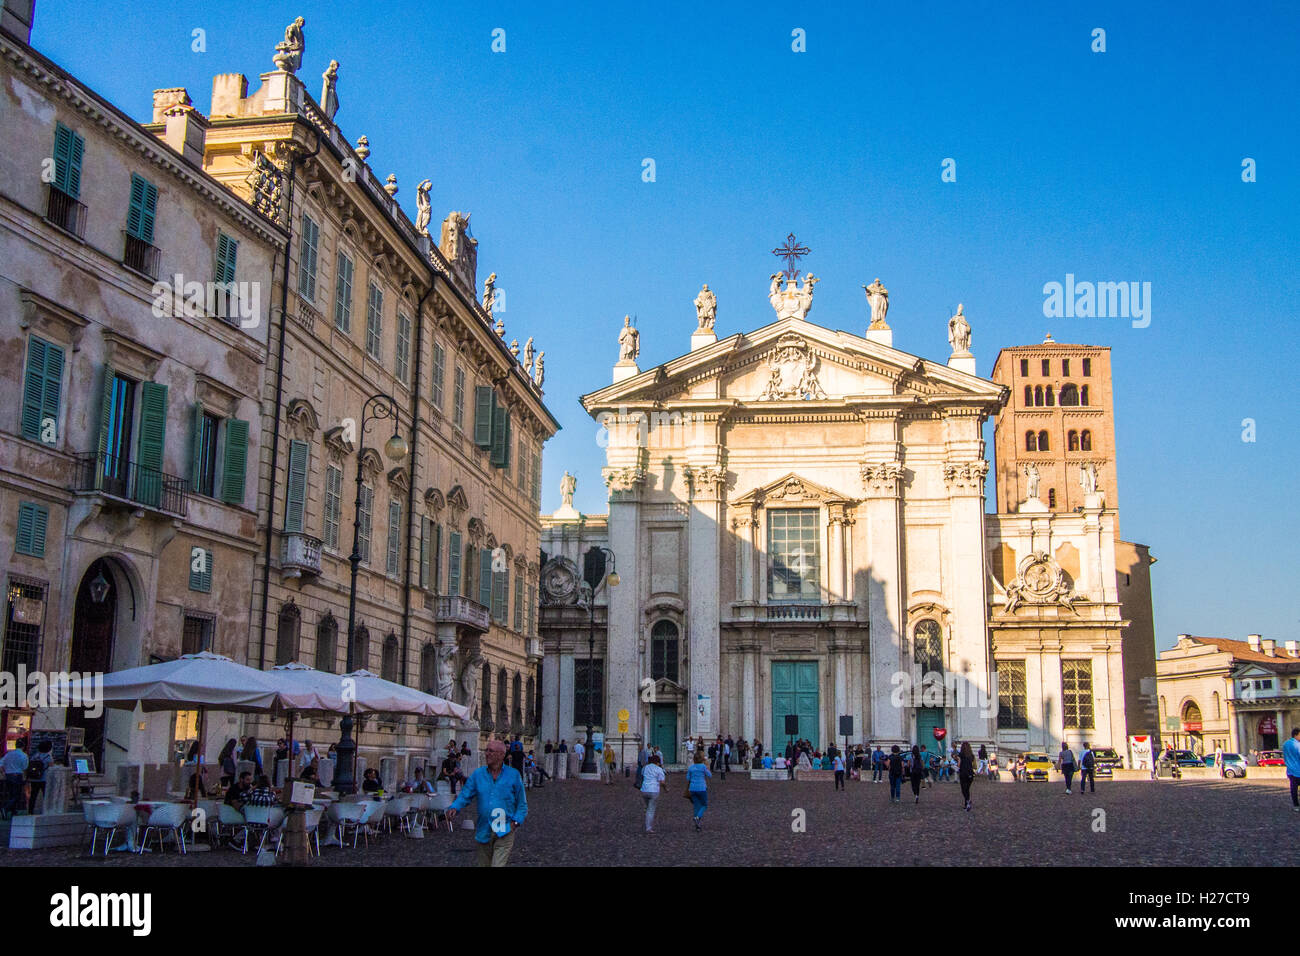 Piazza Sordello avec la Cathédrale de San Pietro (Pierre), Mantoue (Mantova), Lombardie, Italie. Banque D'Images